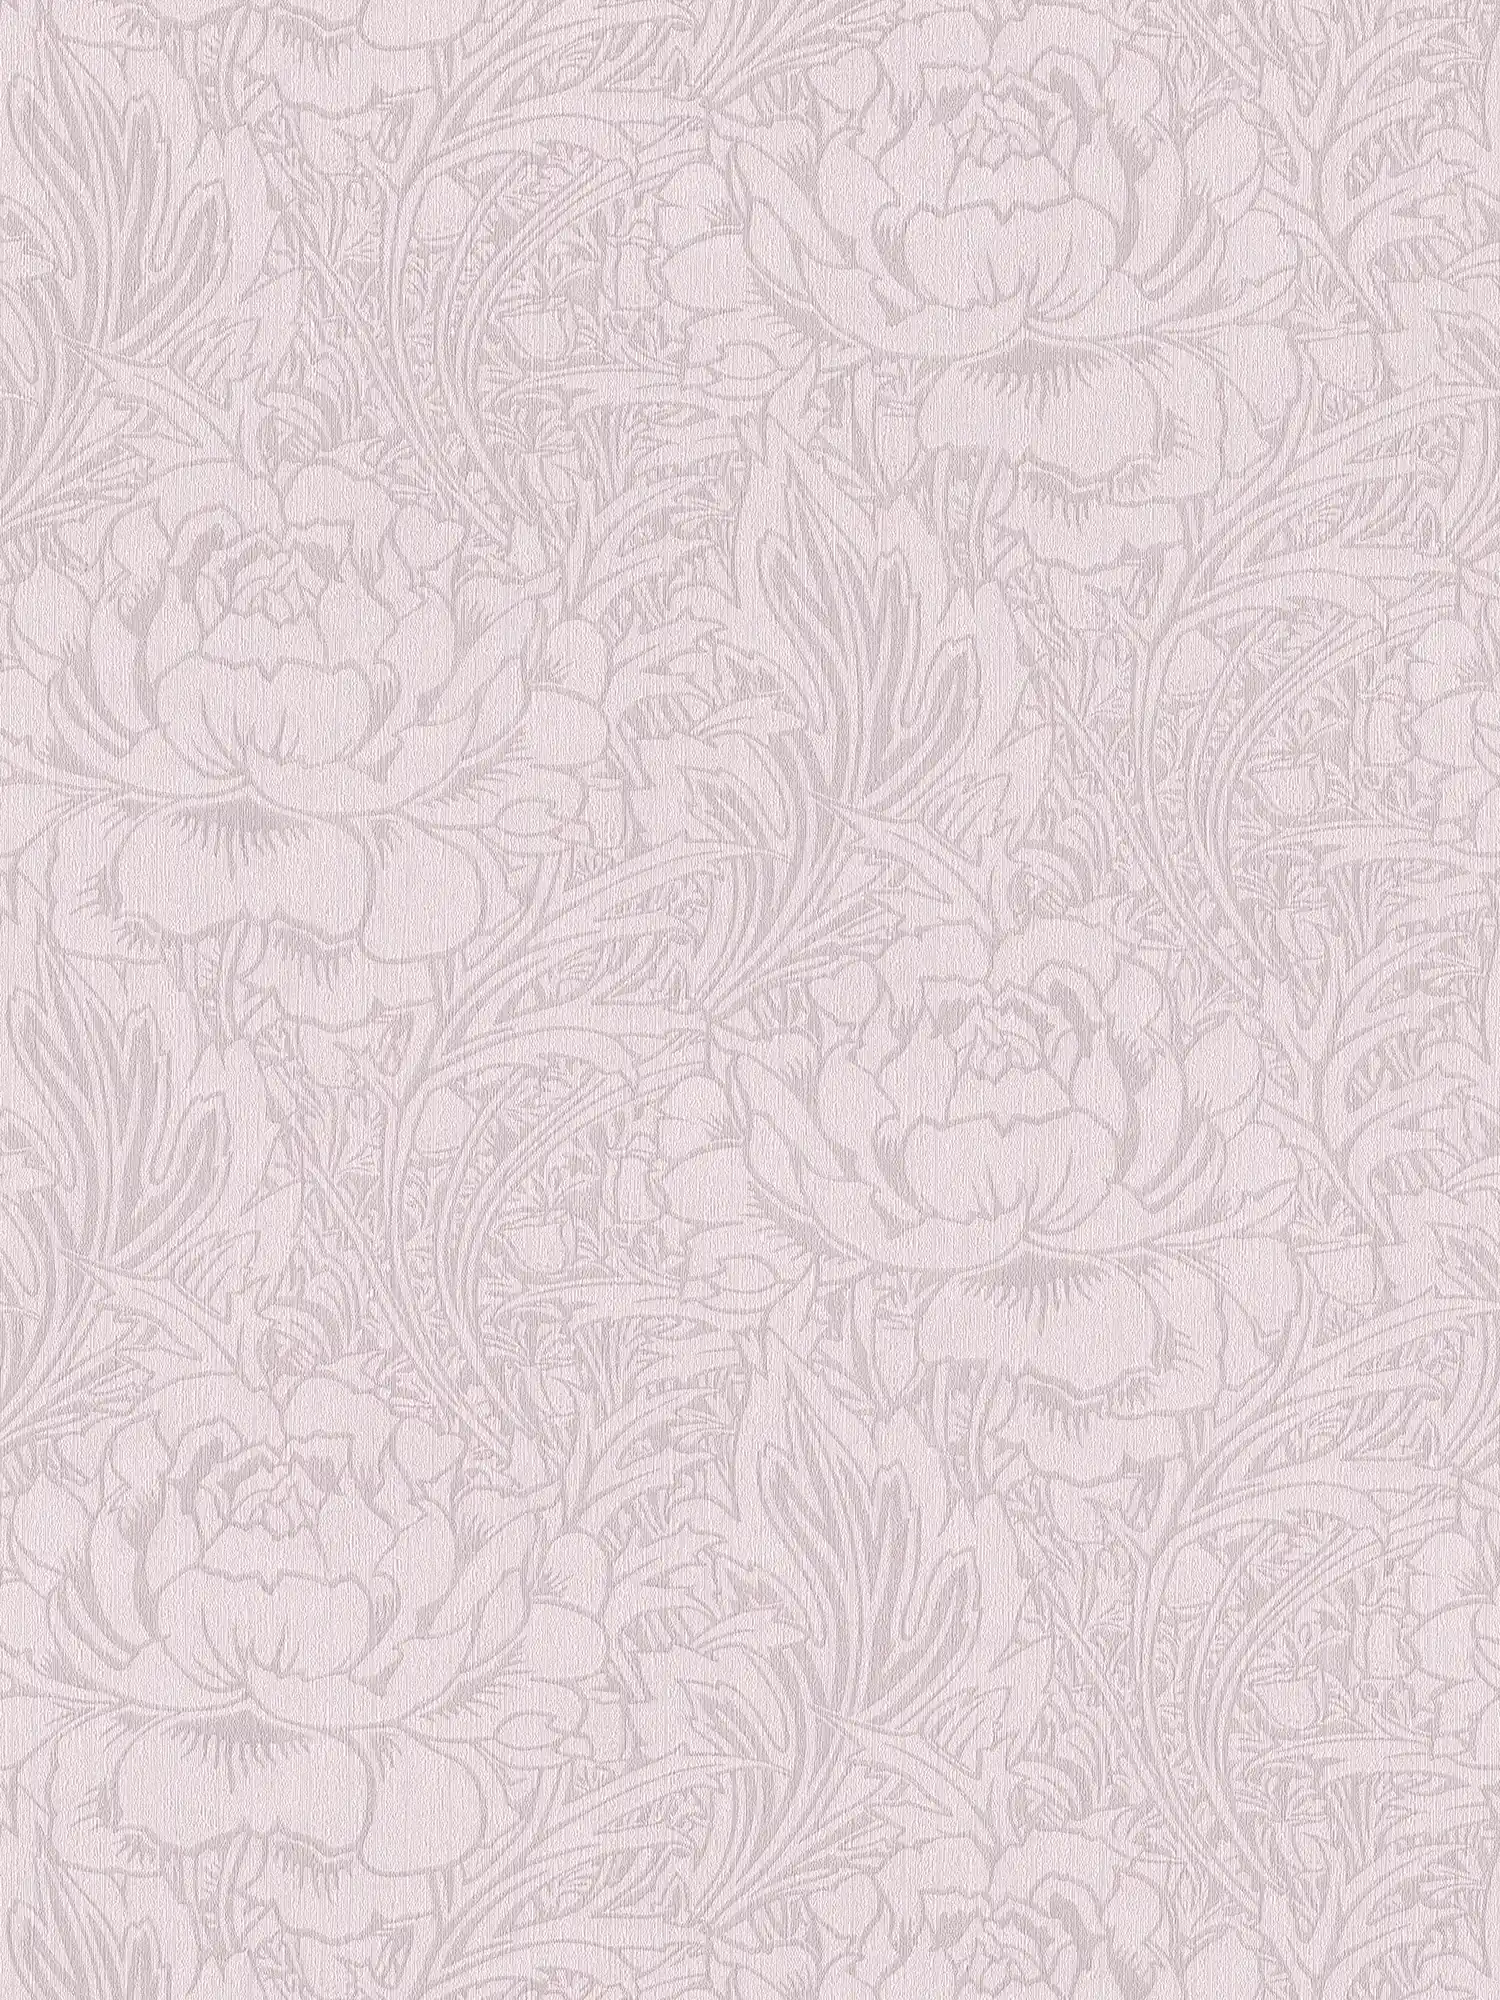 Papier peint floral motif Art nouveau, uni & mat
